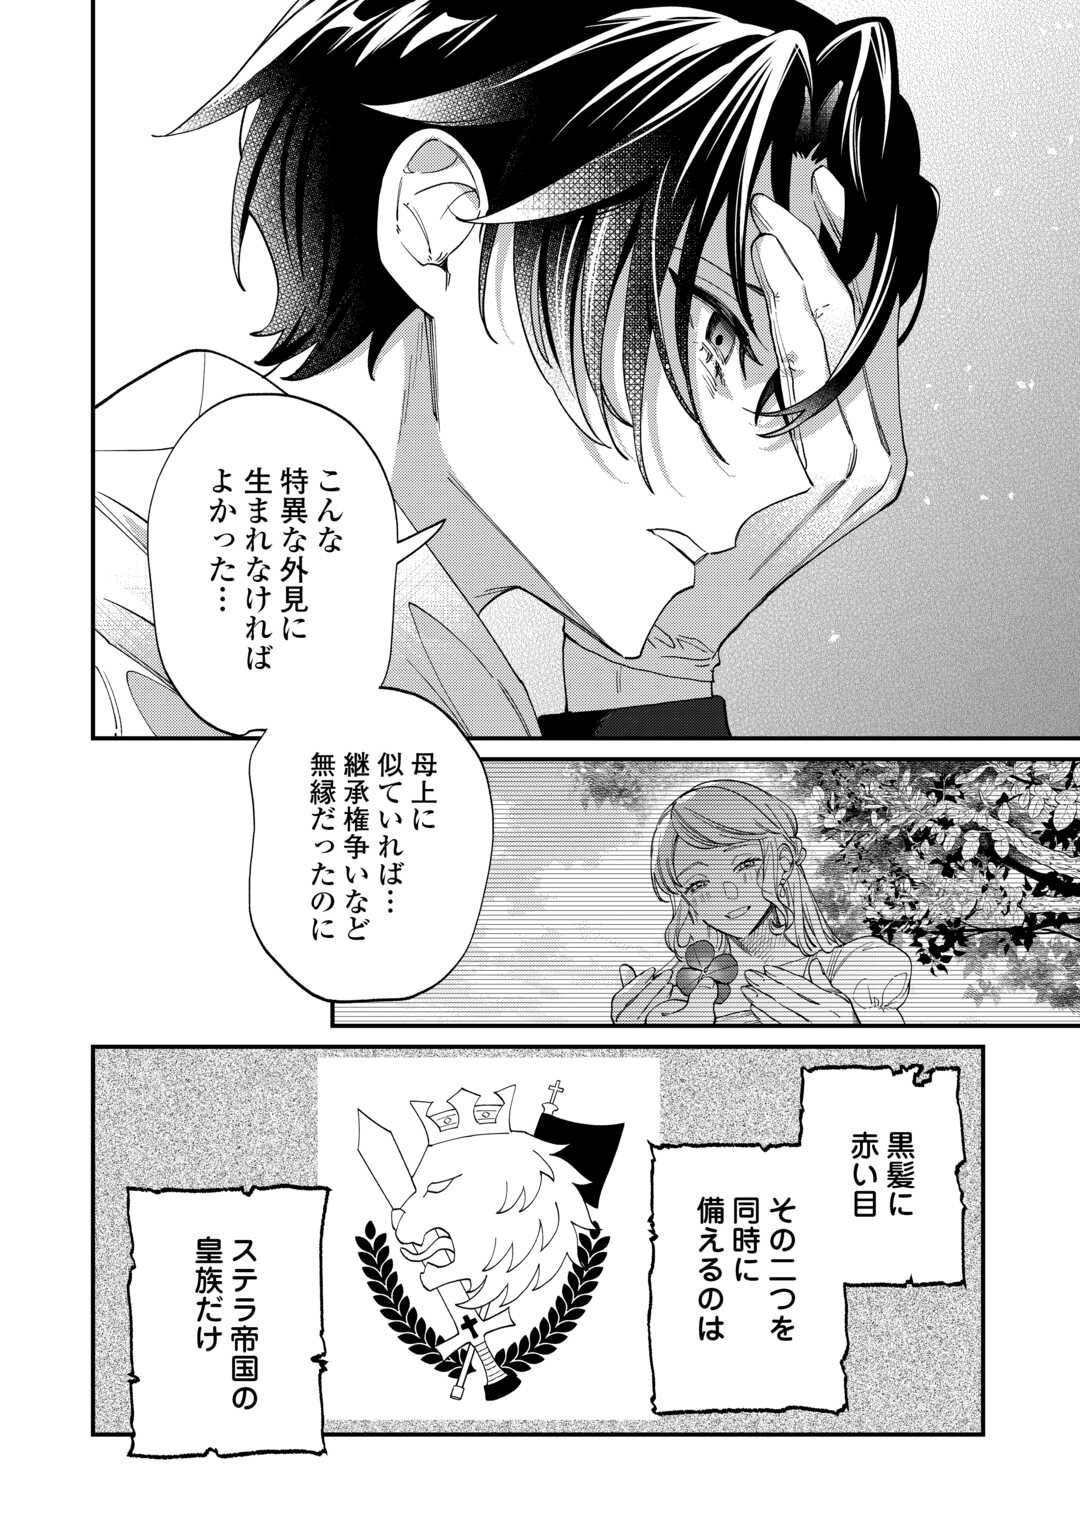 Watashi ga Shinde Manzoku desu ka? - Chapter 5 - Page 2